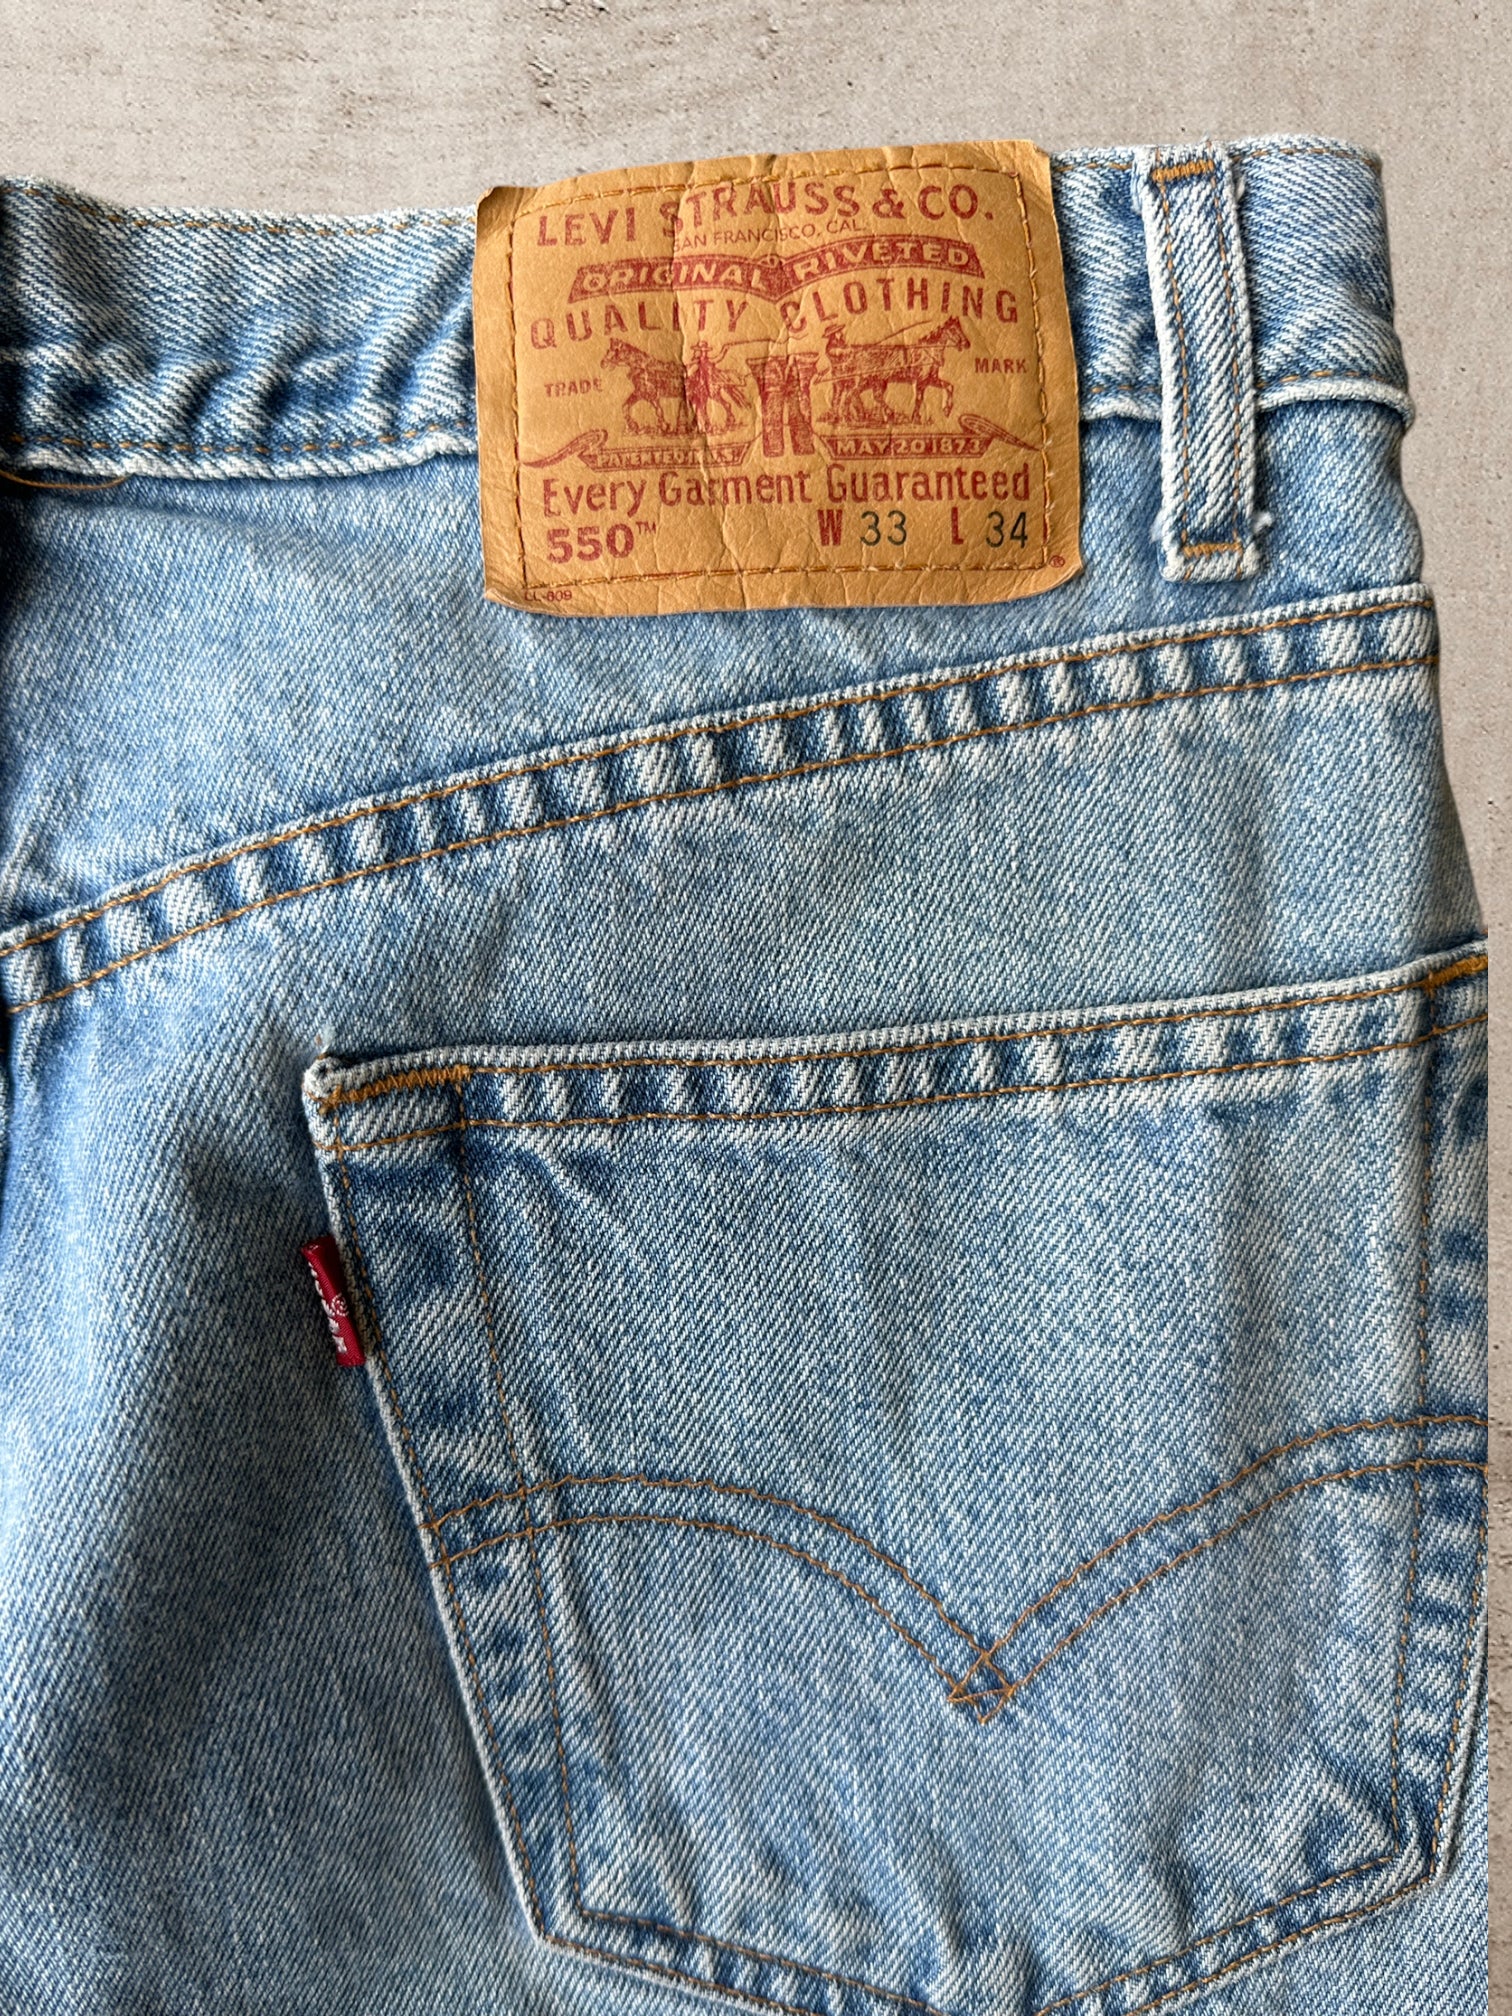 90s Levi 550 Light Wash Jeans - 32x34